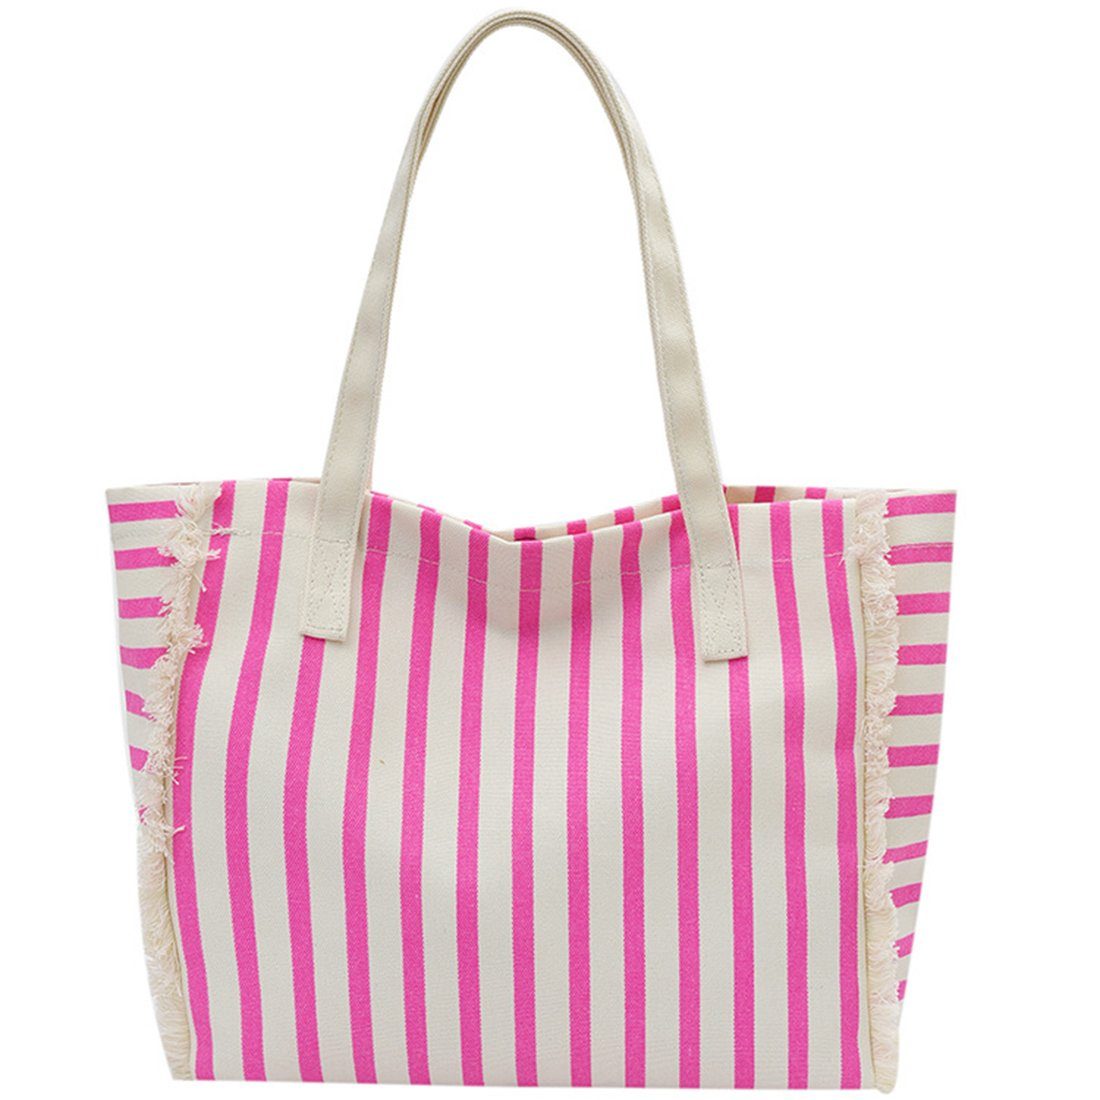 Tasche, Haiaveng Handtasche Innentasche Umhängetasche Shopper mit Segeltuch für Groß Tote Schultertasche Umhängetasche Damen,Lässige pink